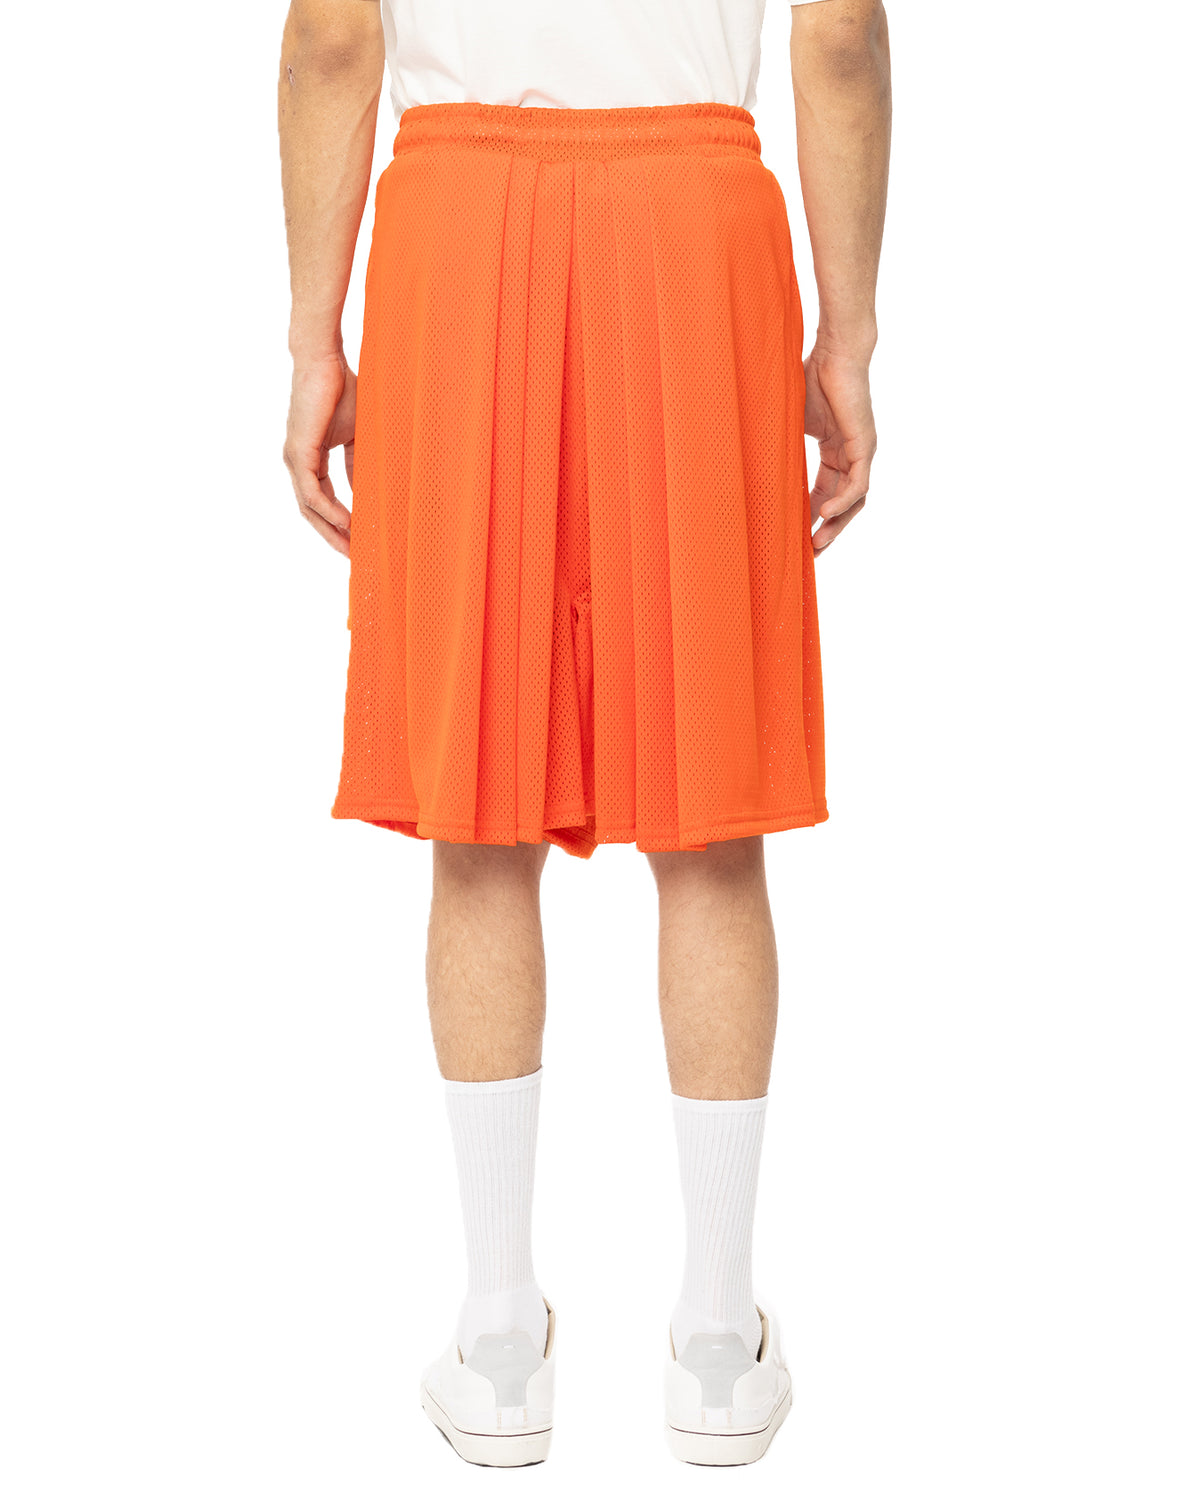 Mesh Pleated Hakama Shorts - Orange